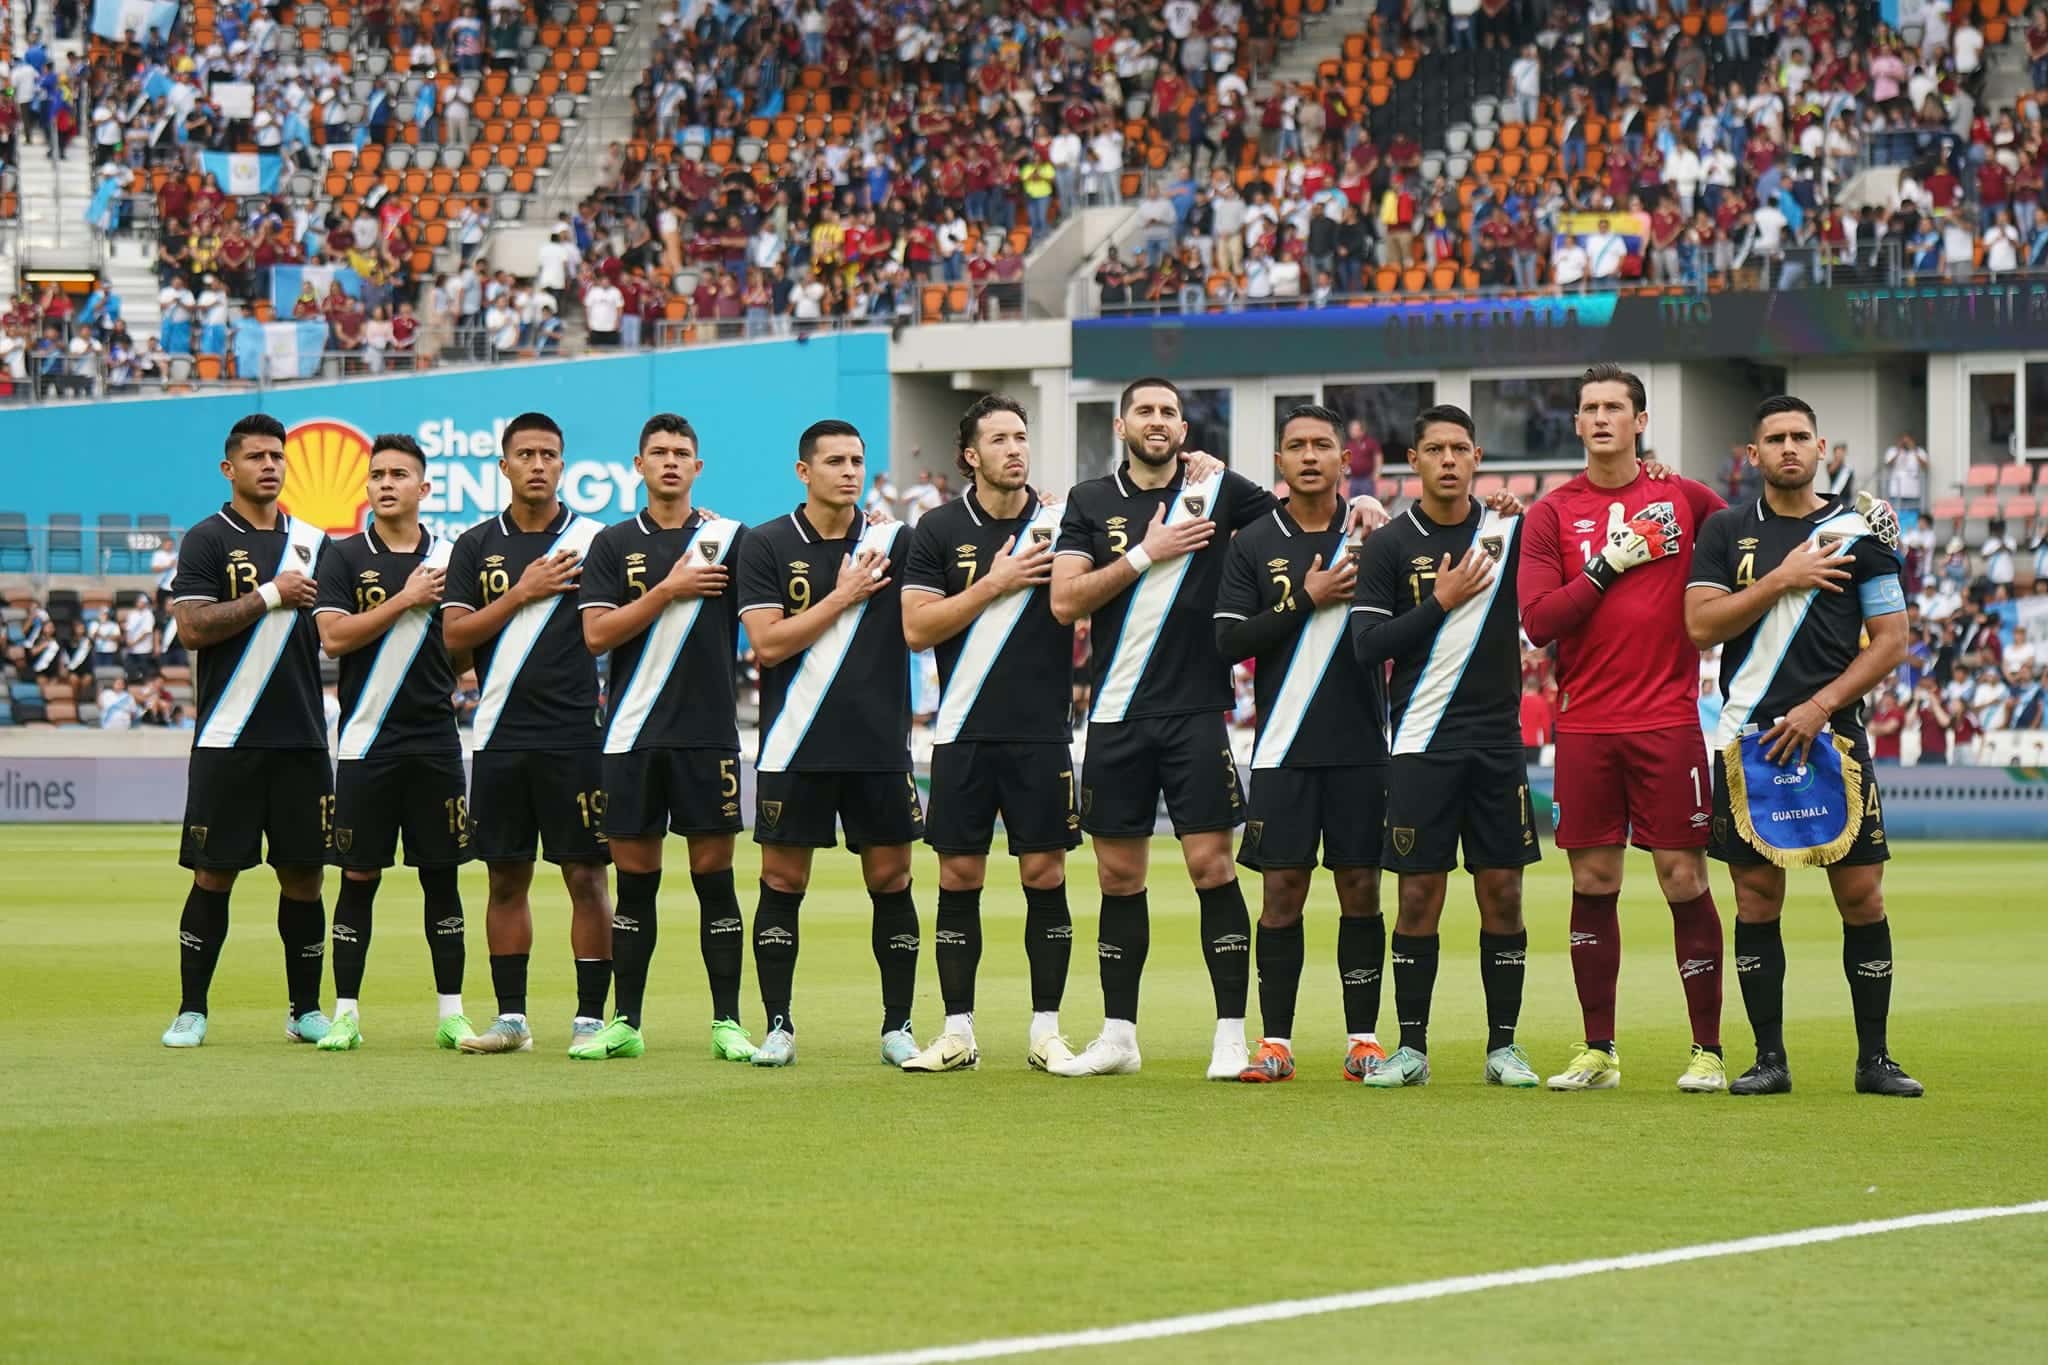 Ranquin de la FIFA: Selección de Guatemala